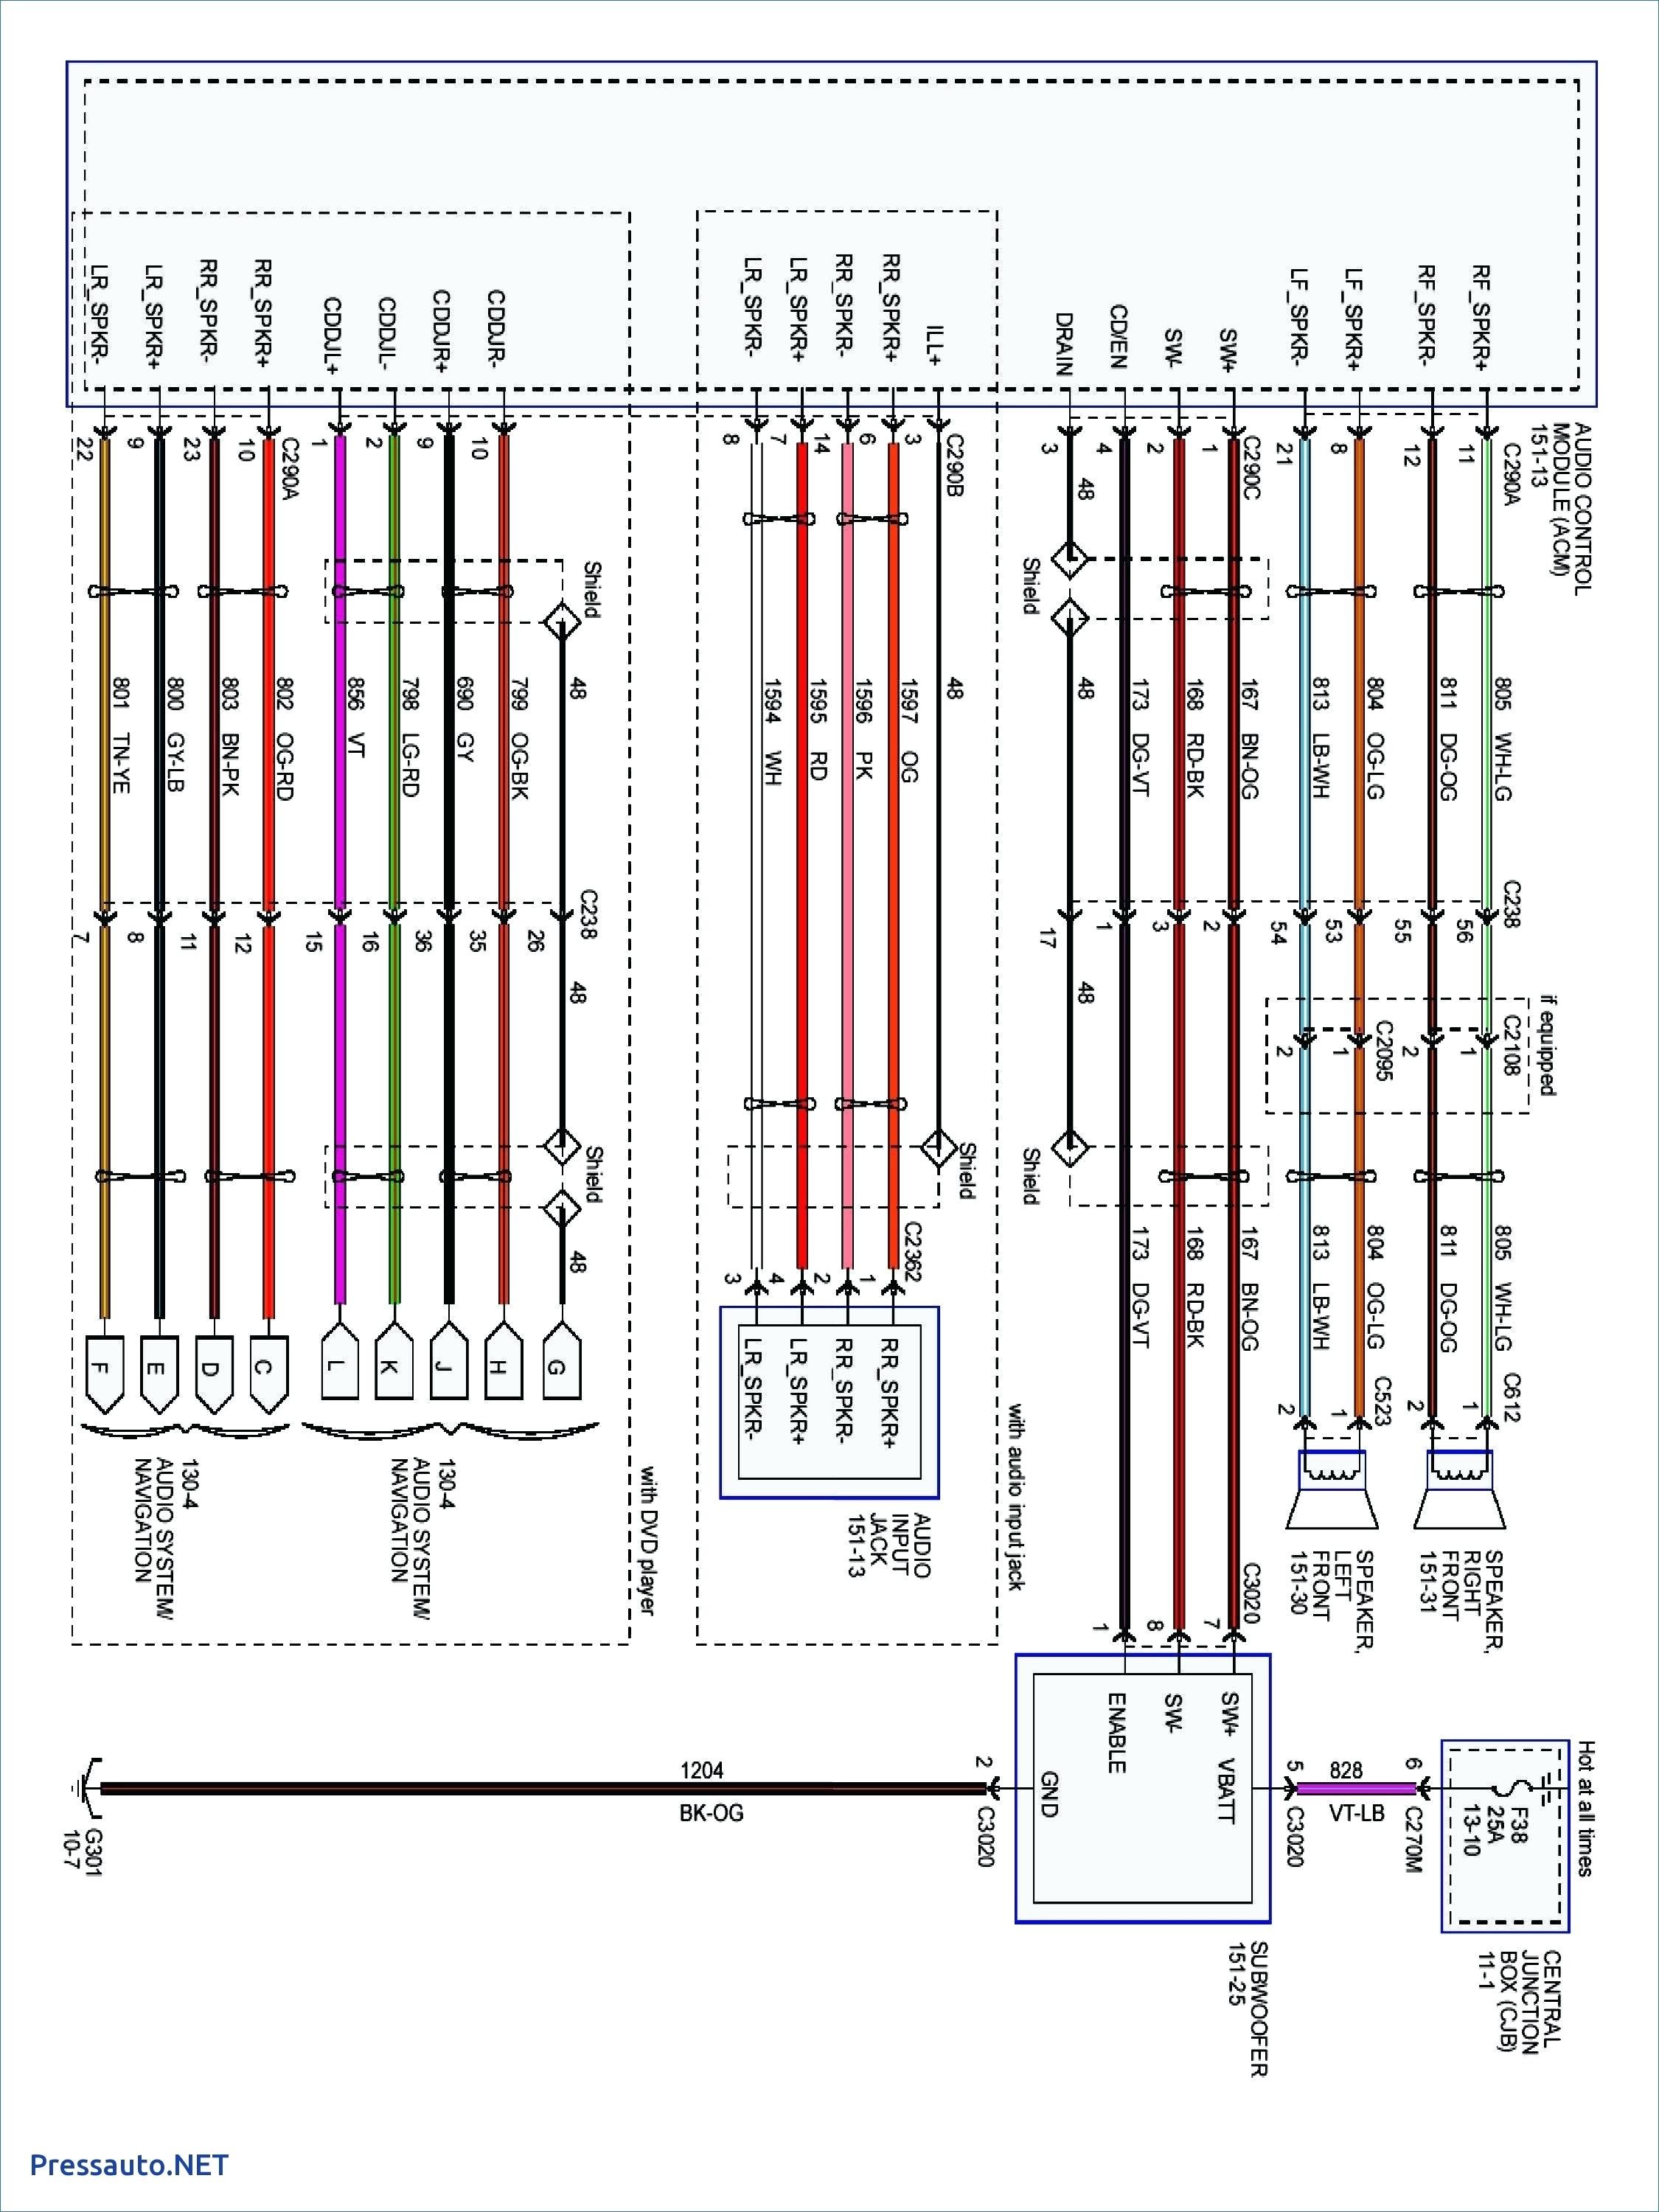 1994 Ford Taurus Wiring Diagram - Wiring Diagram